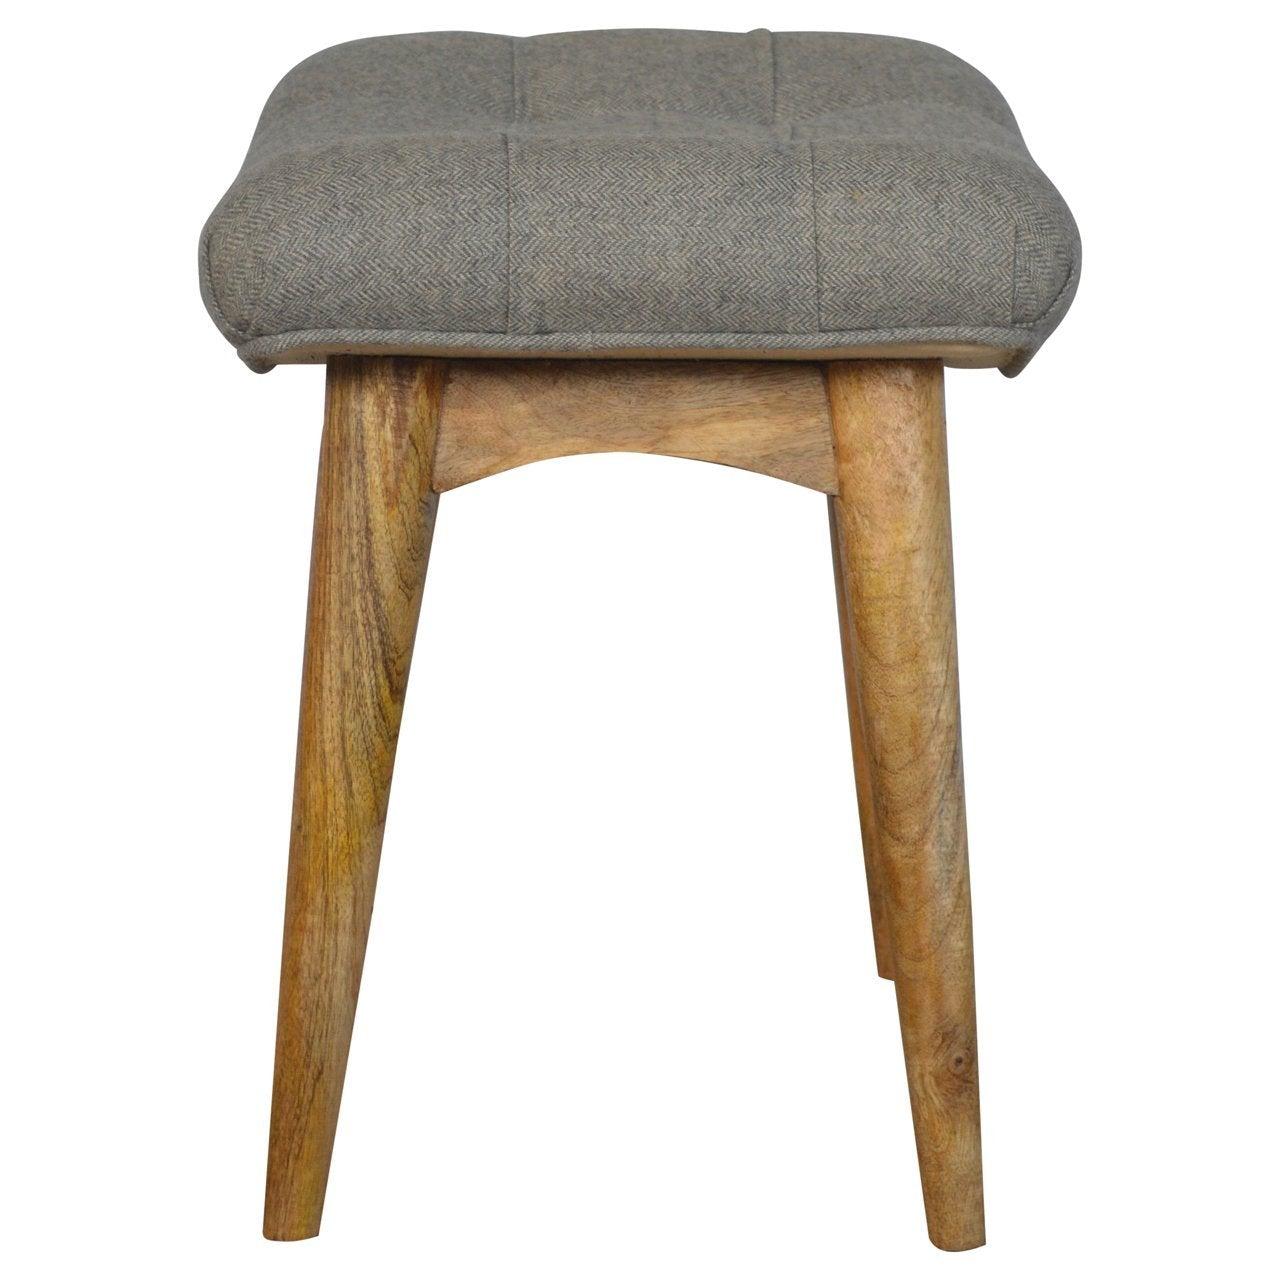 Curved grey tweed bench - crimblefest furniture - image 9